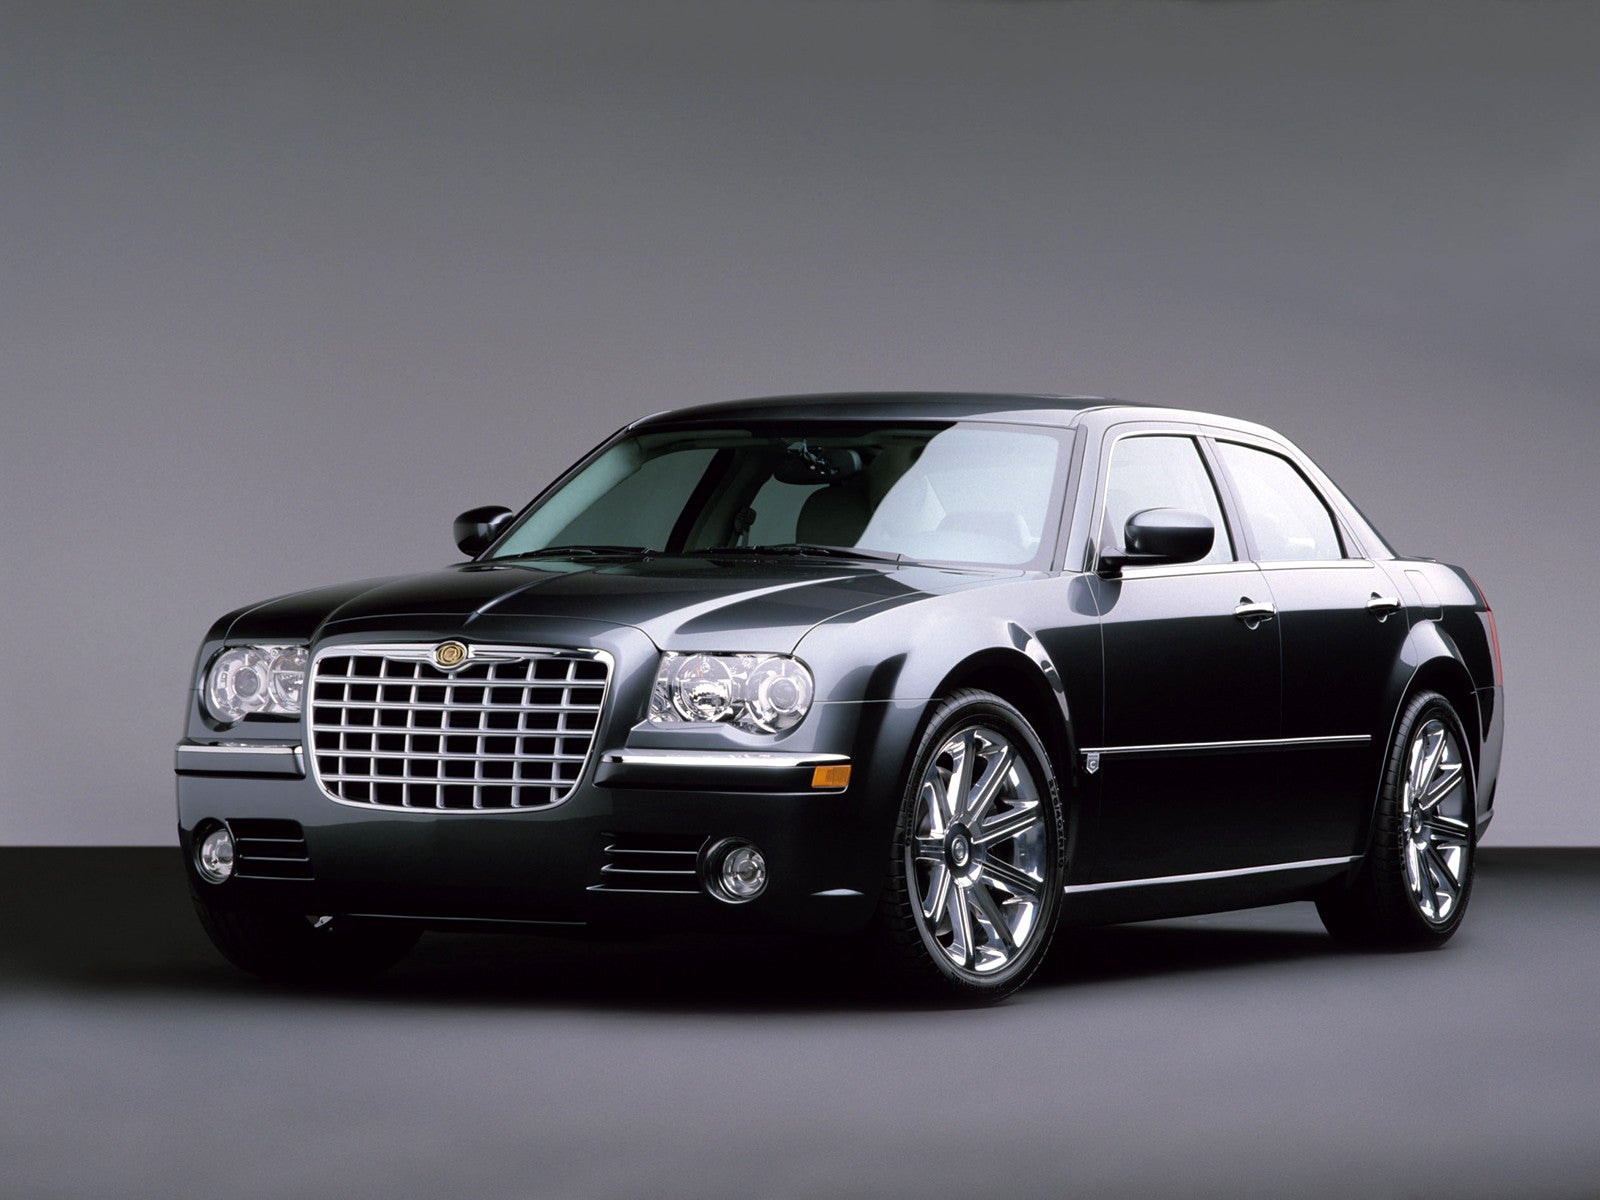 2009 Chrysler aspen 5.7 hemi